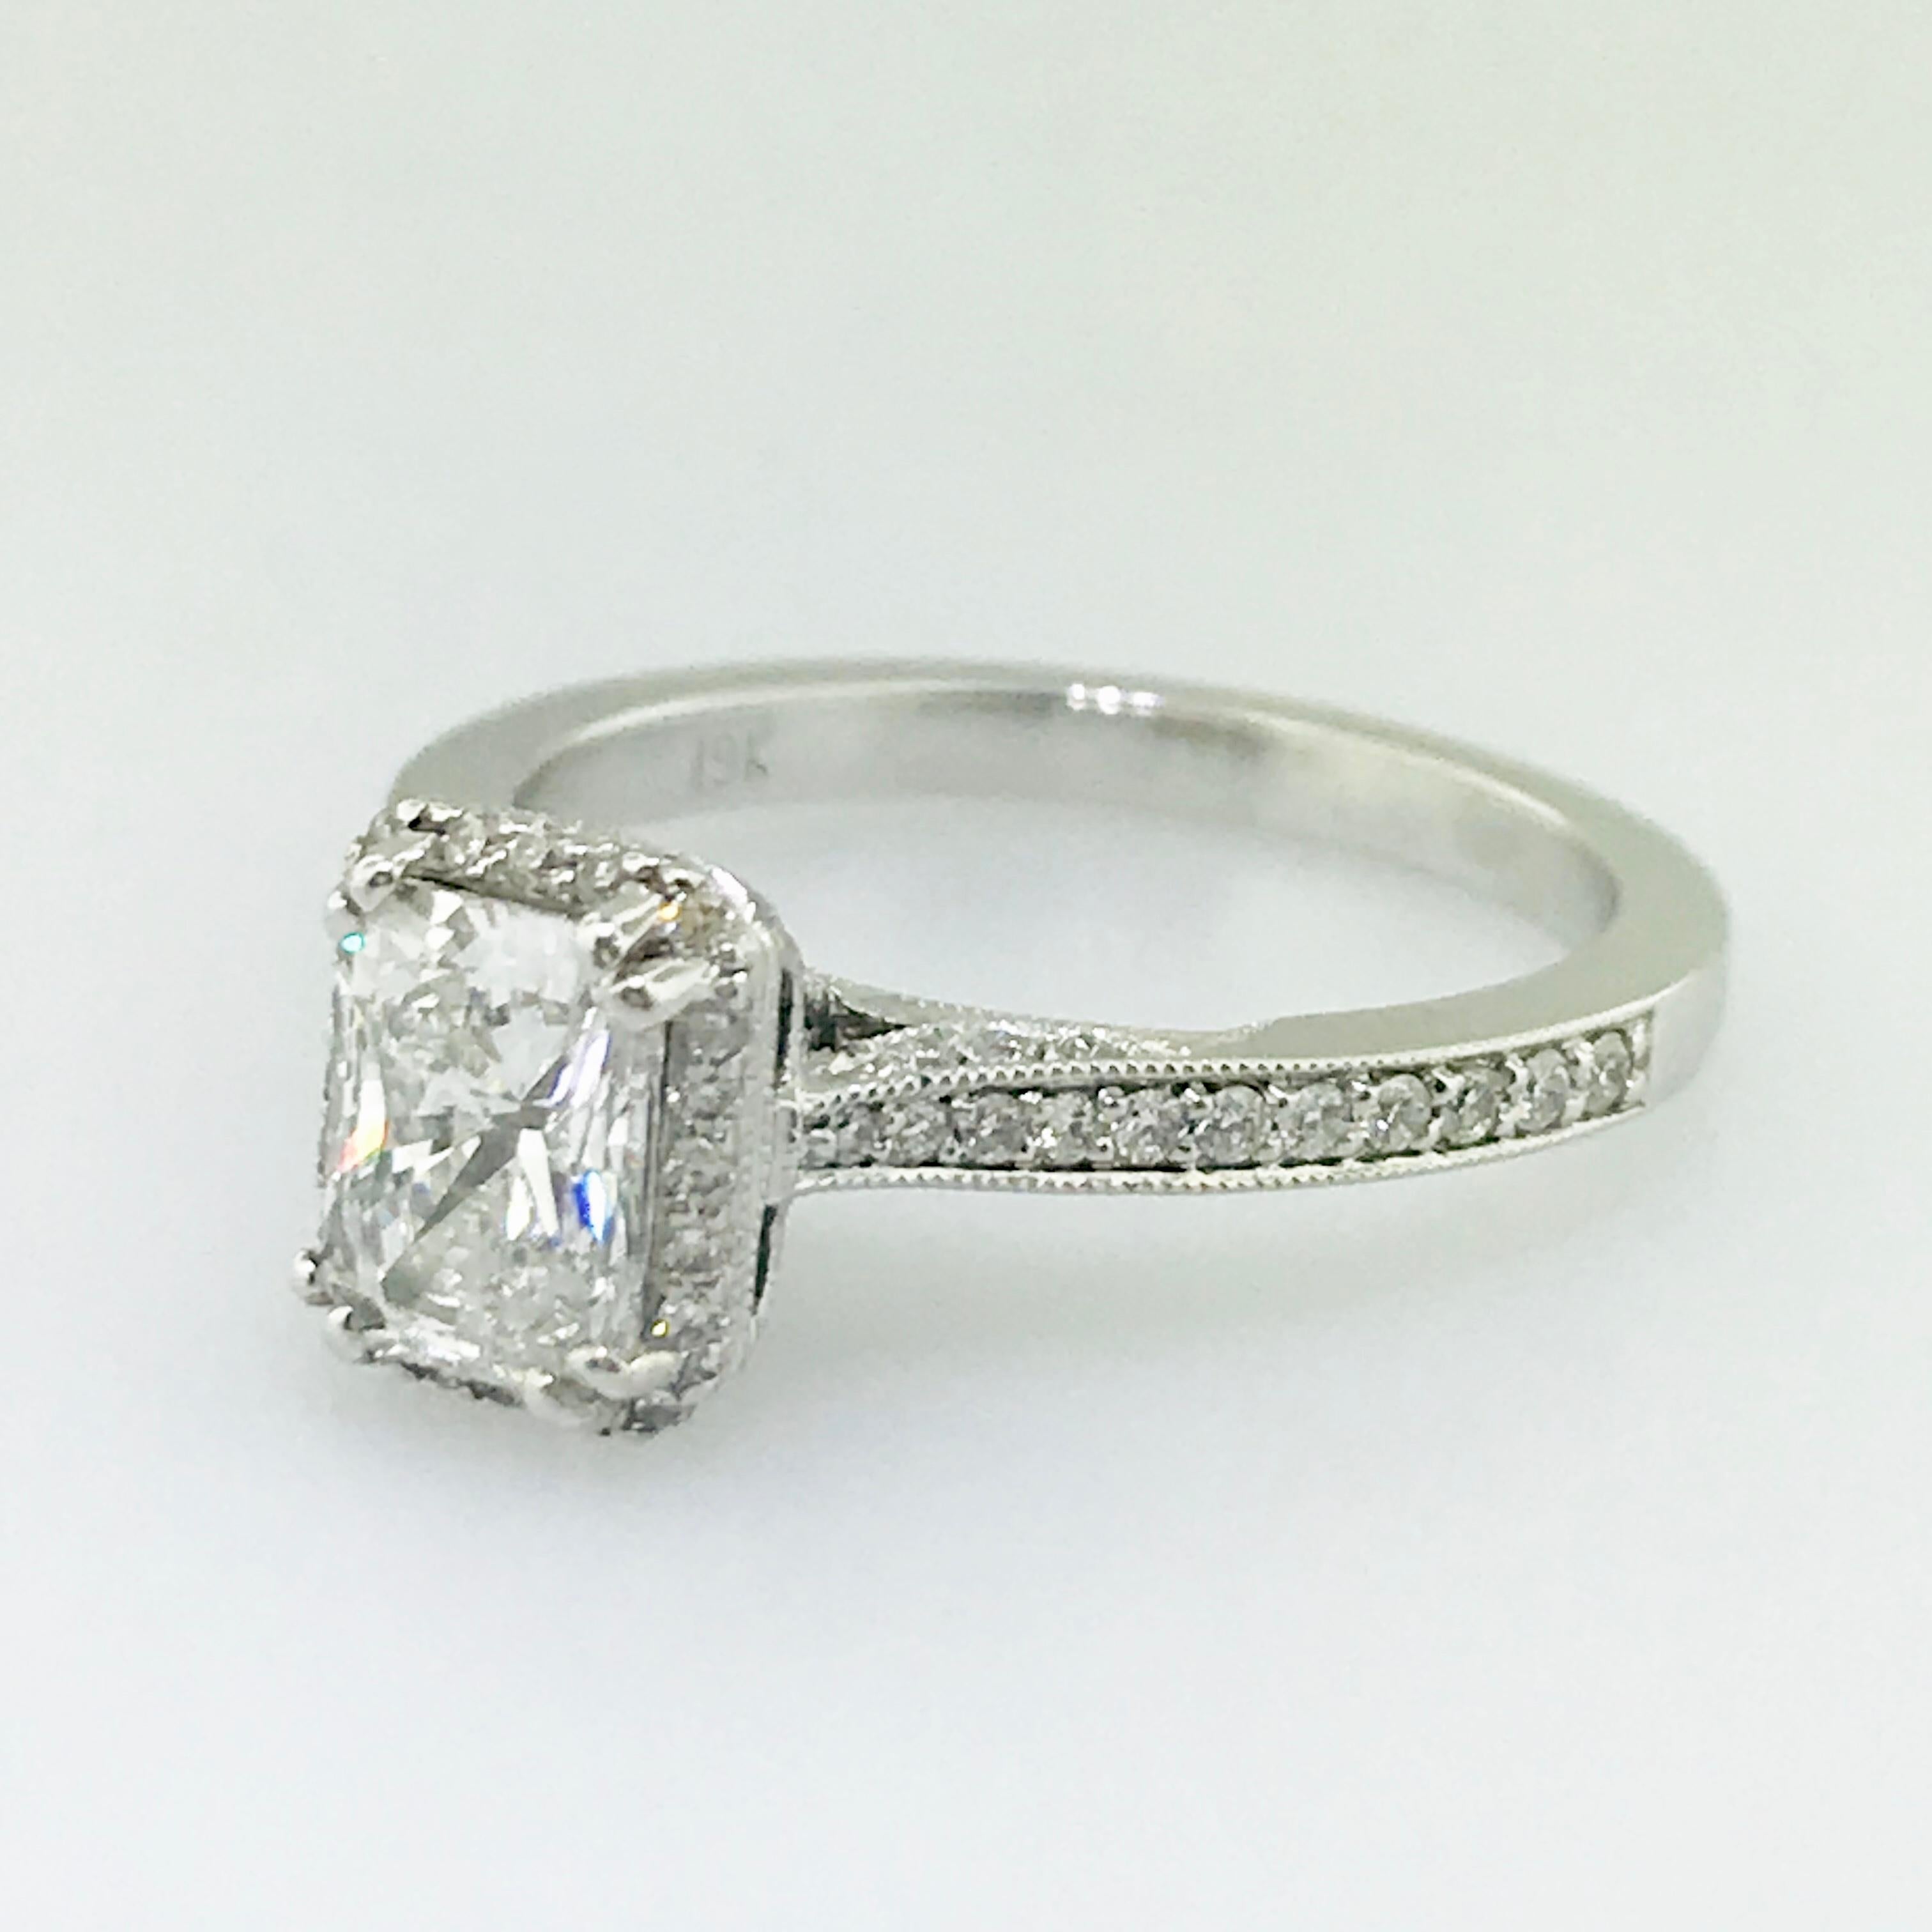 19k white gold engagement ring